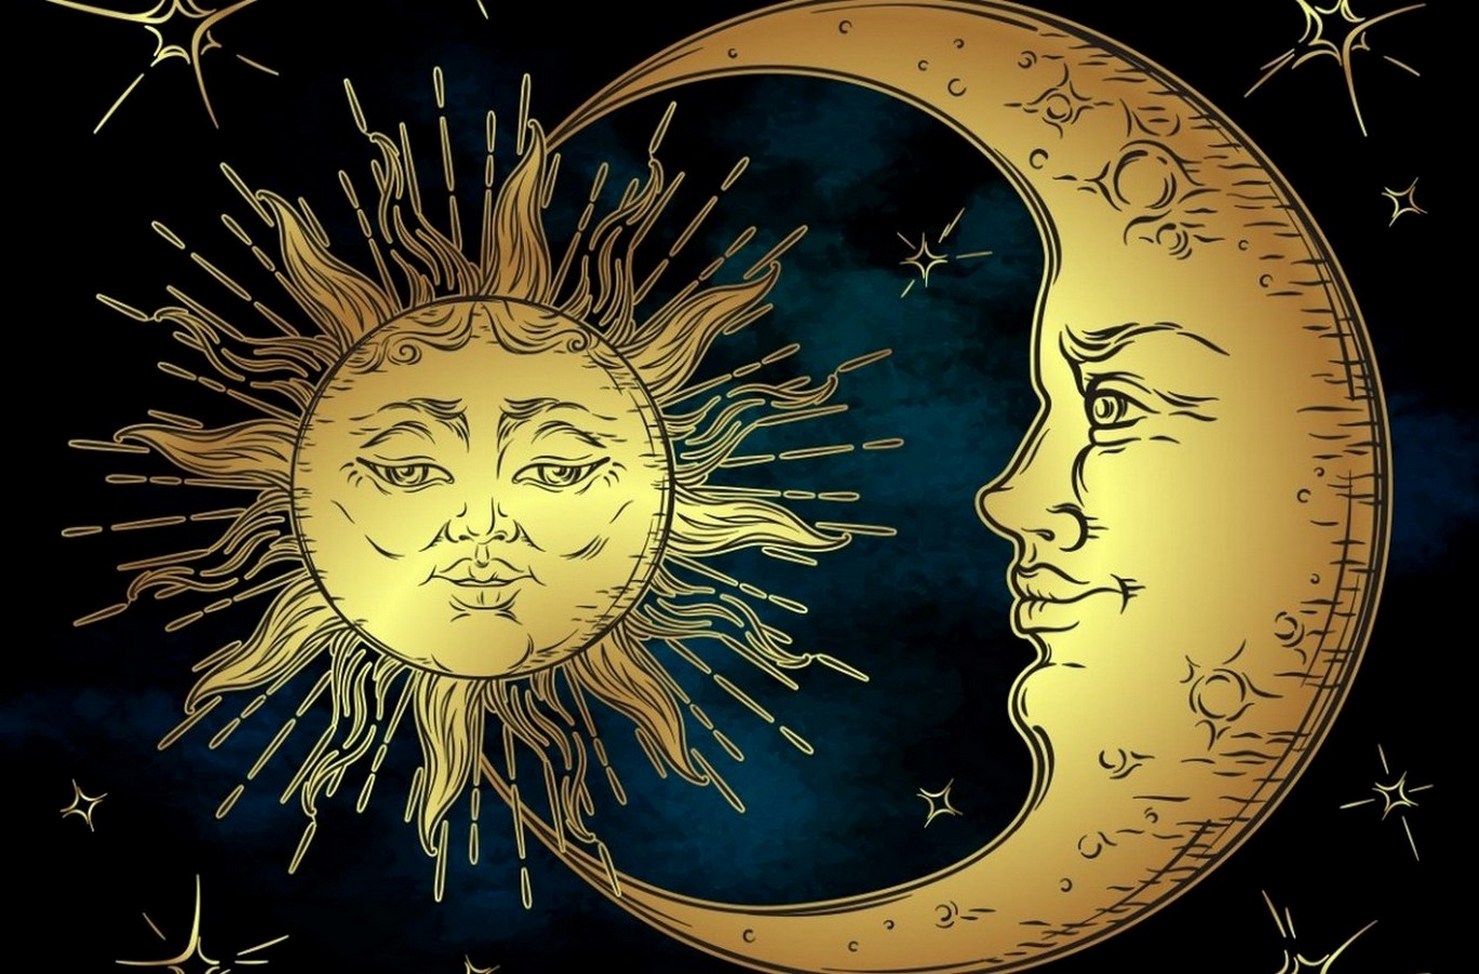 Карта солнца и луны. Солнце и Луна. Kjcywt b Keyf. Изображение солнца и Луны. Солнце и месяц.